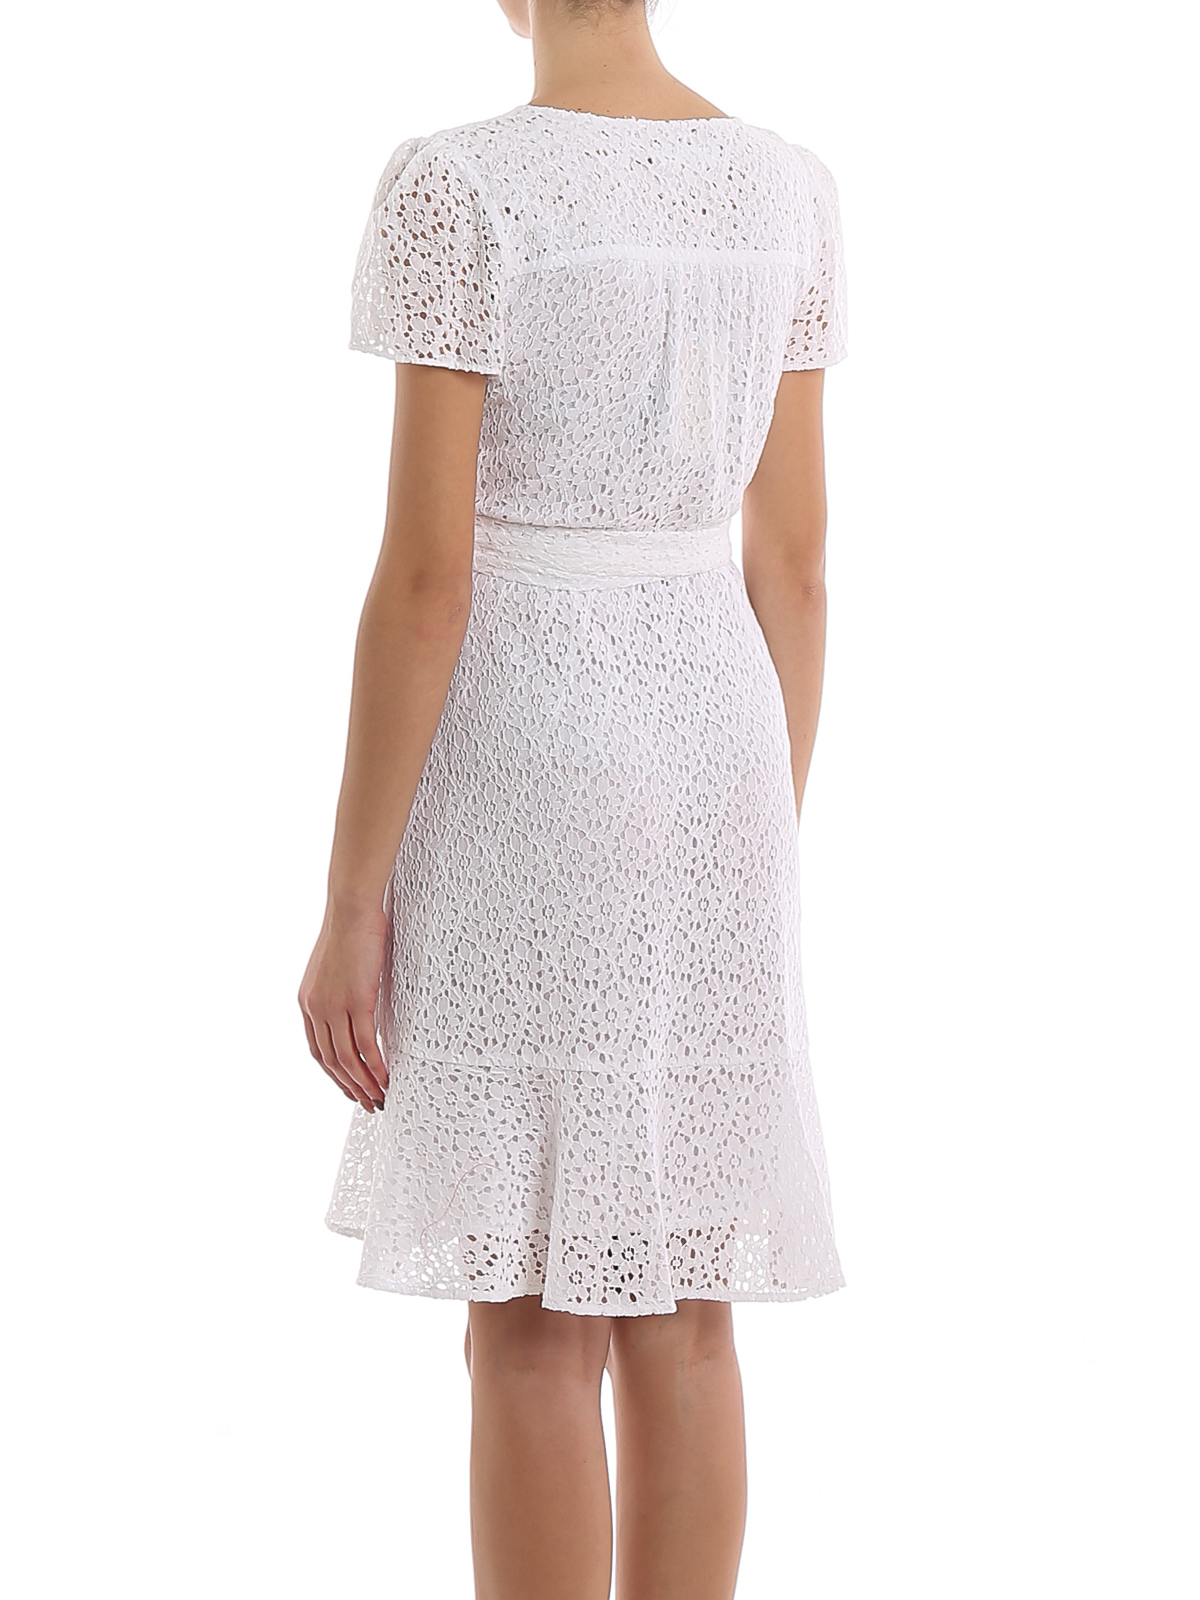 michael kors white dresses